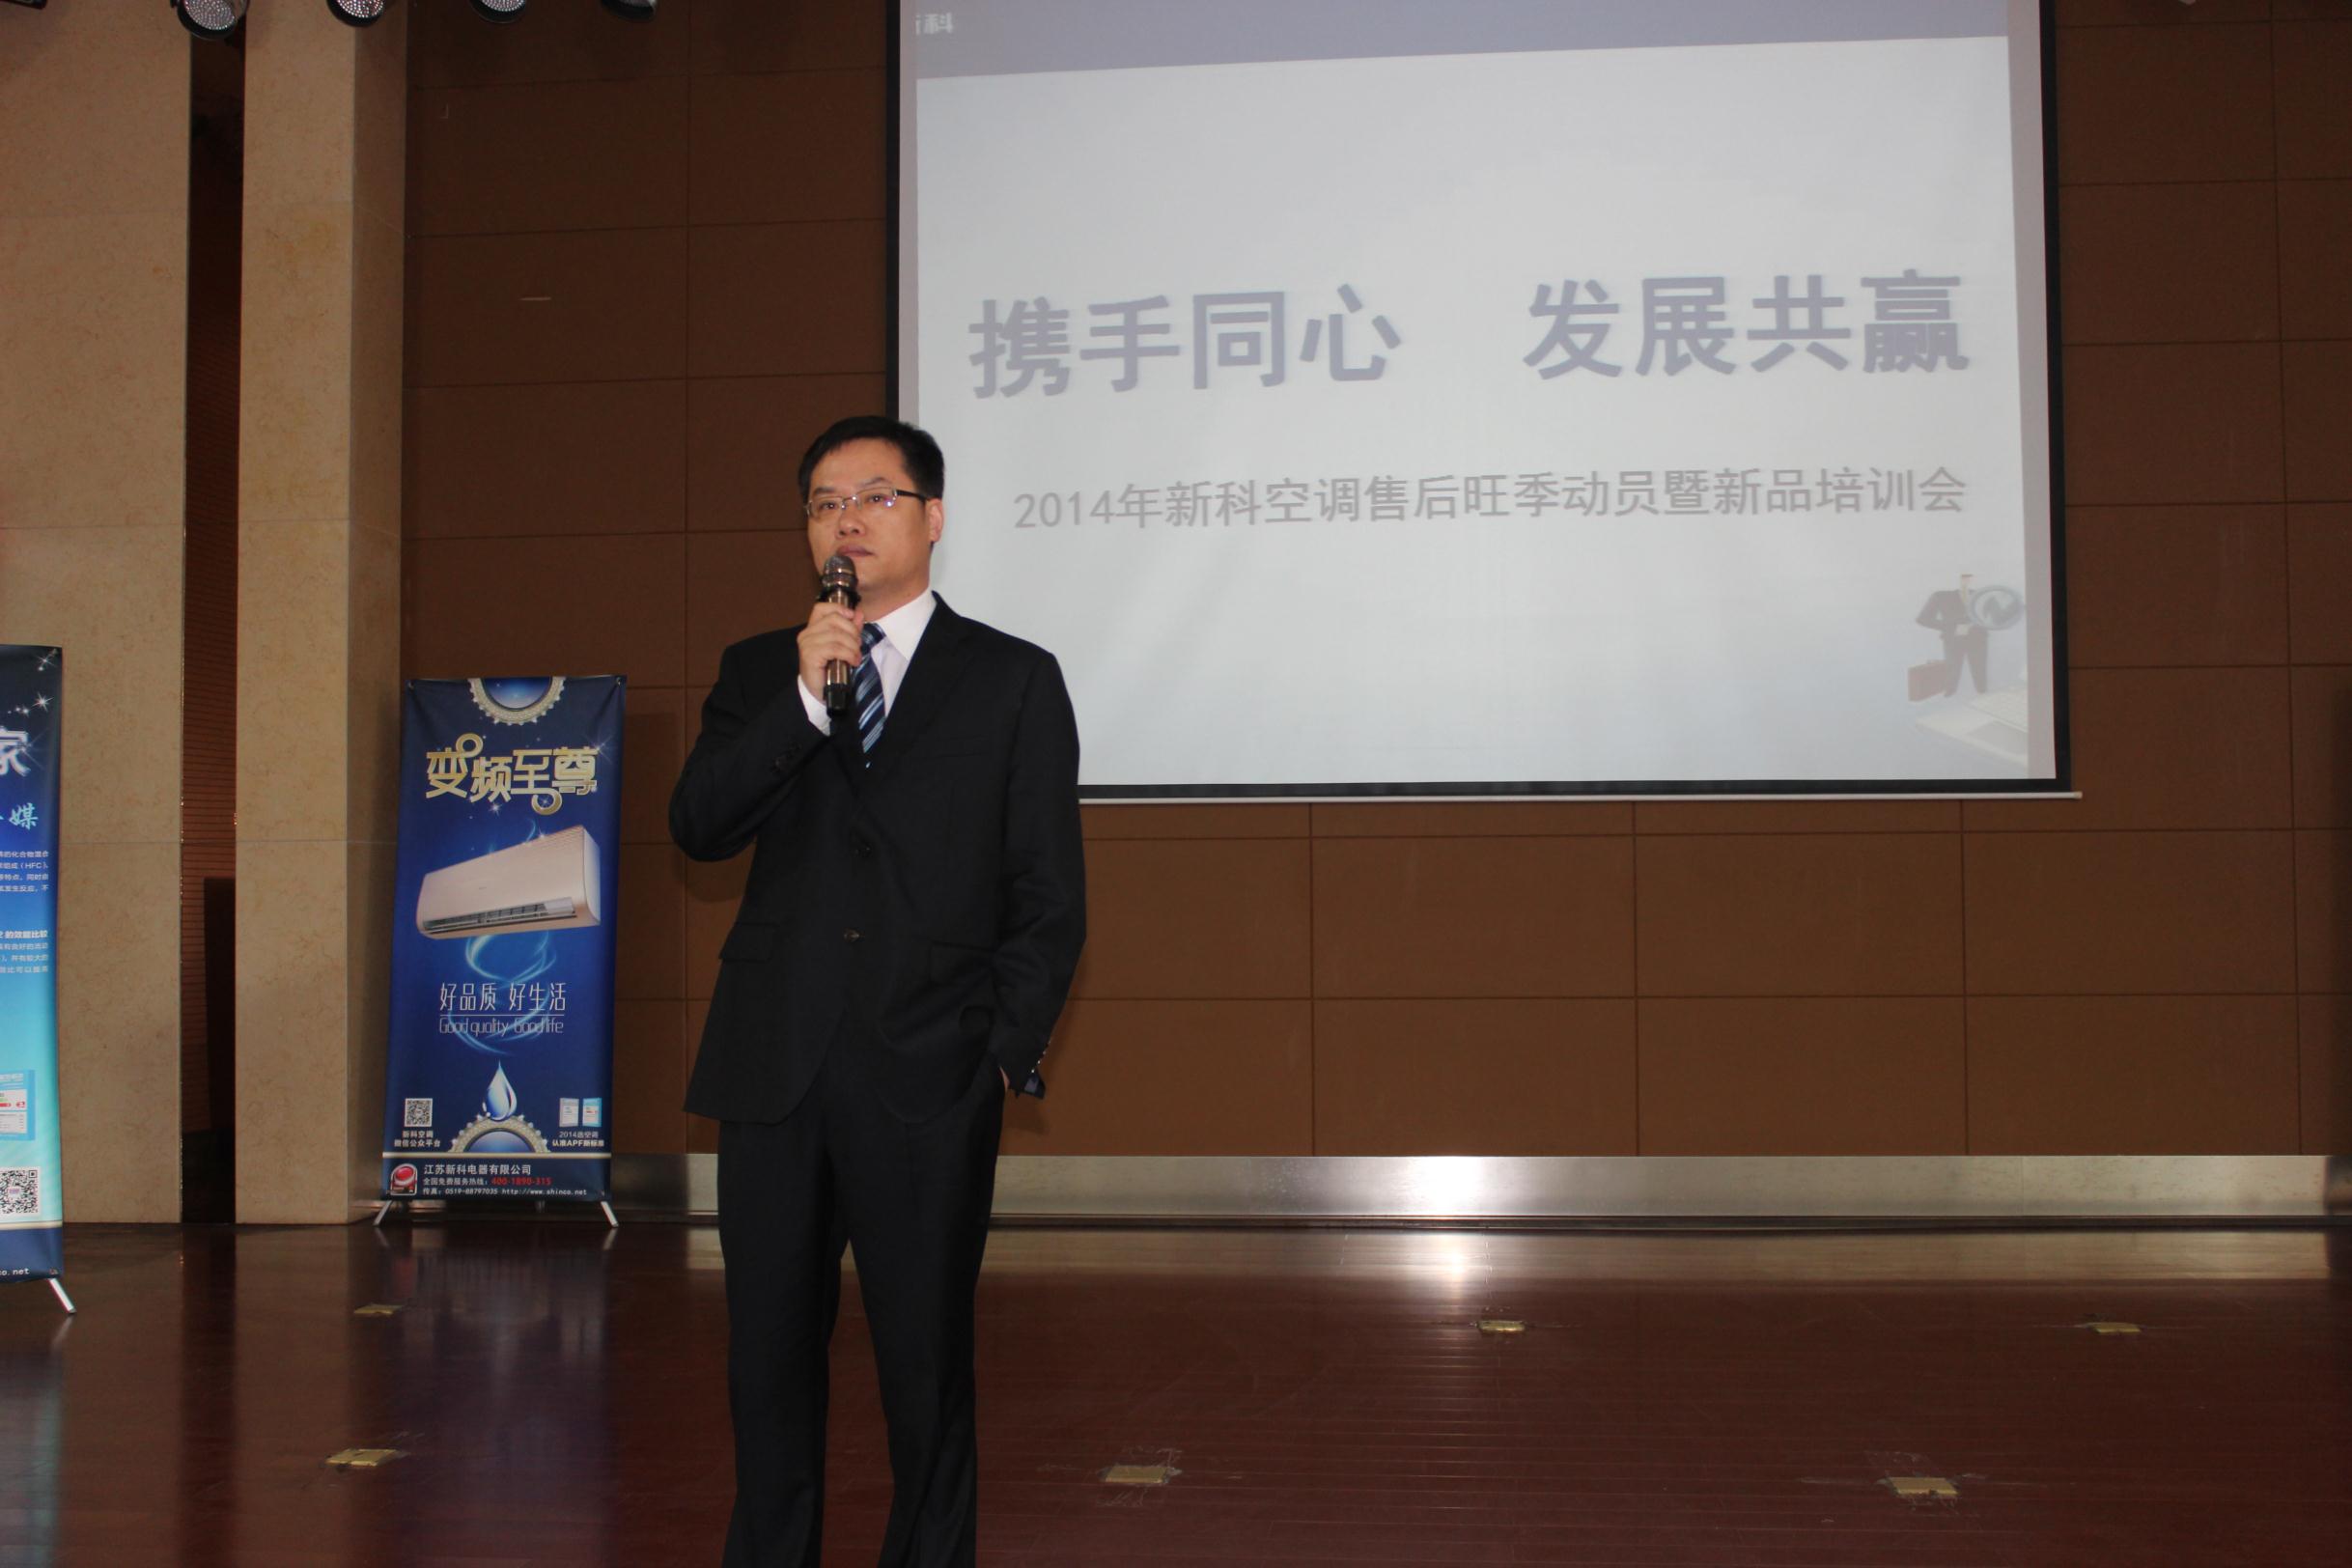 董事長吳清平對服務體系建設相當重視